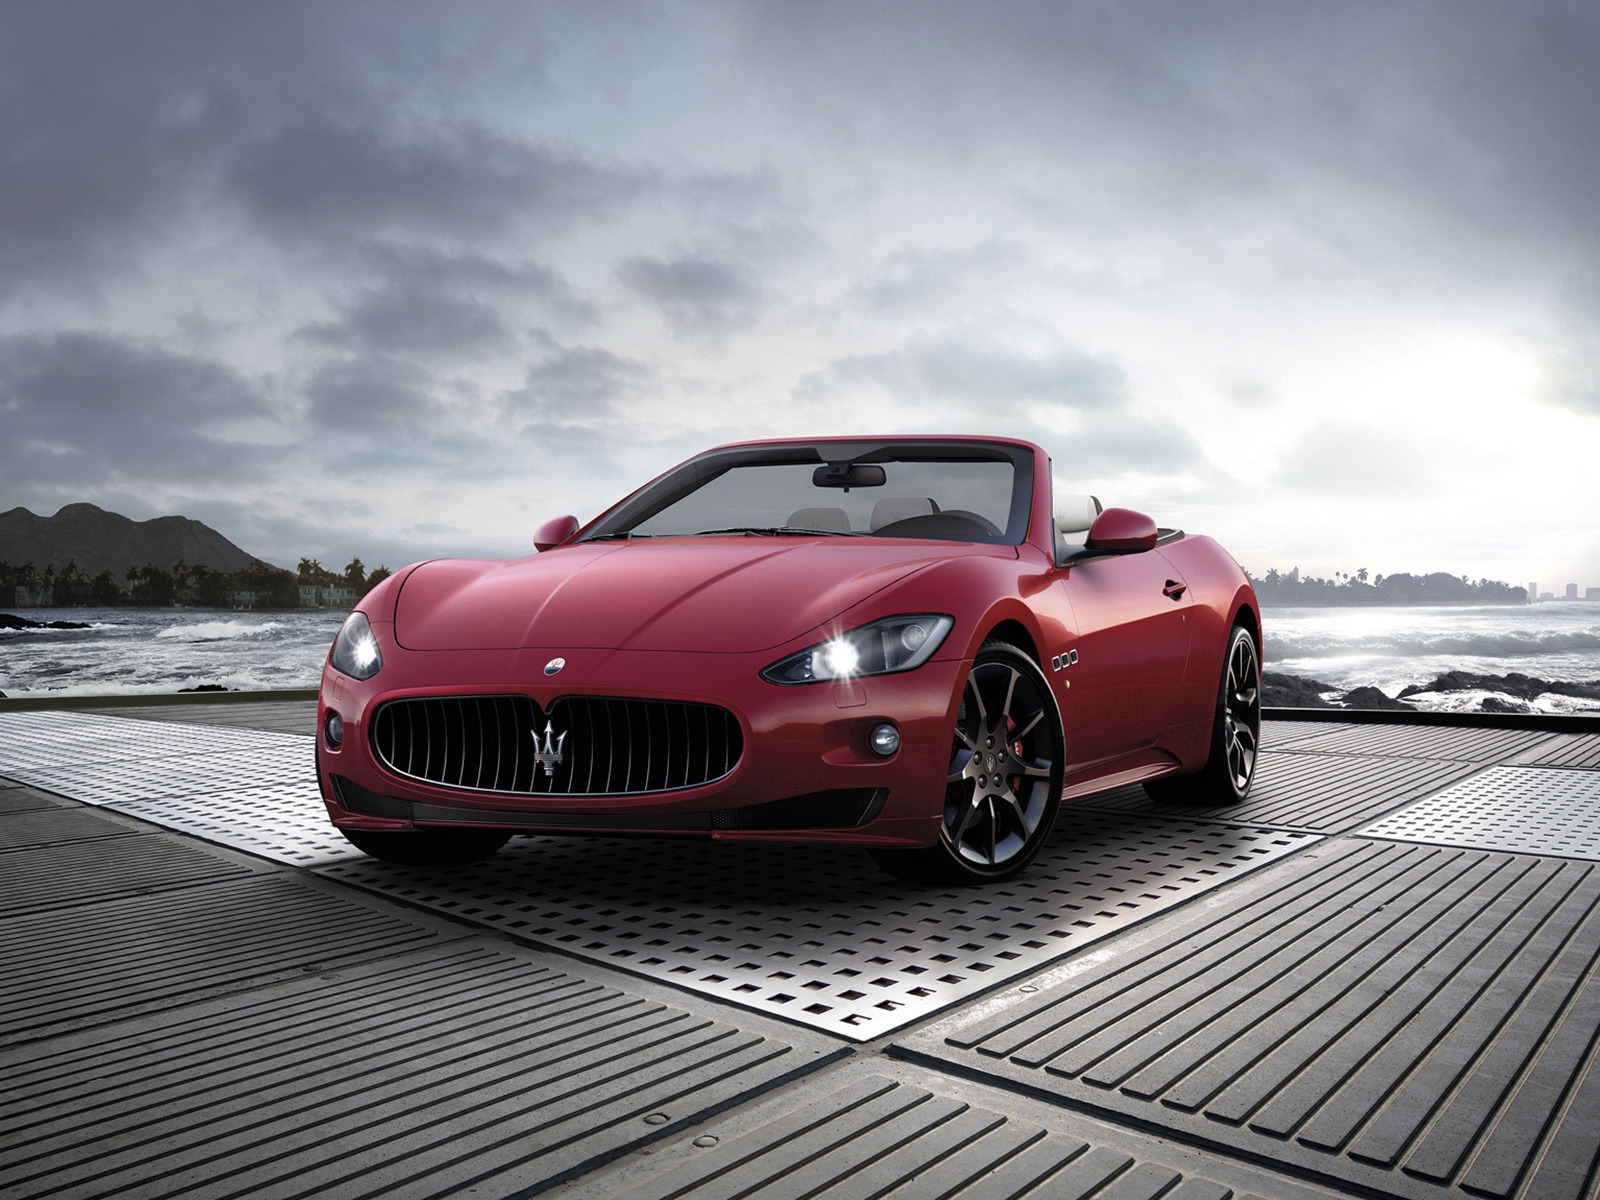 2011 Maserati GranCabrio Sport for 1600 x 1200 resolution